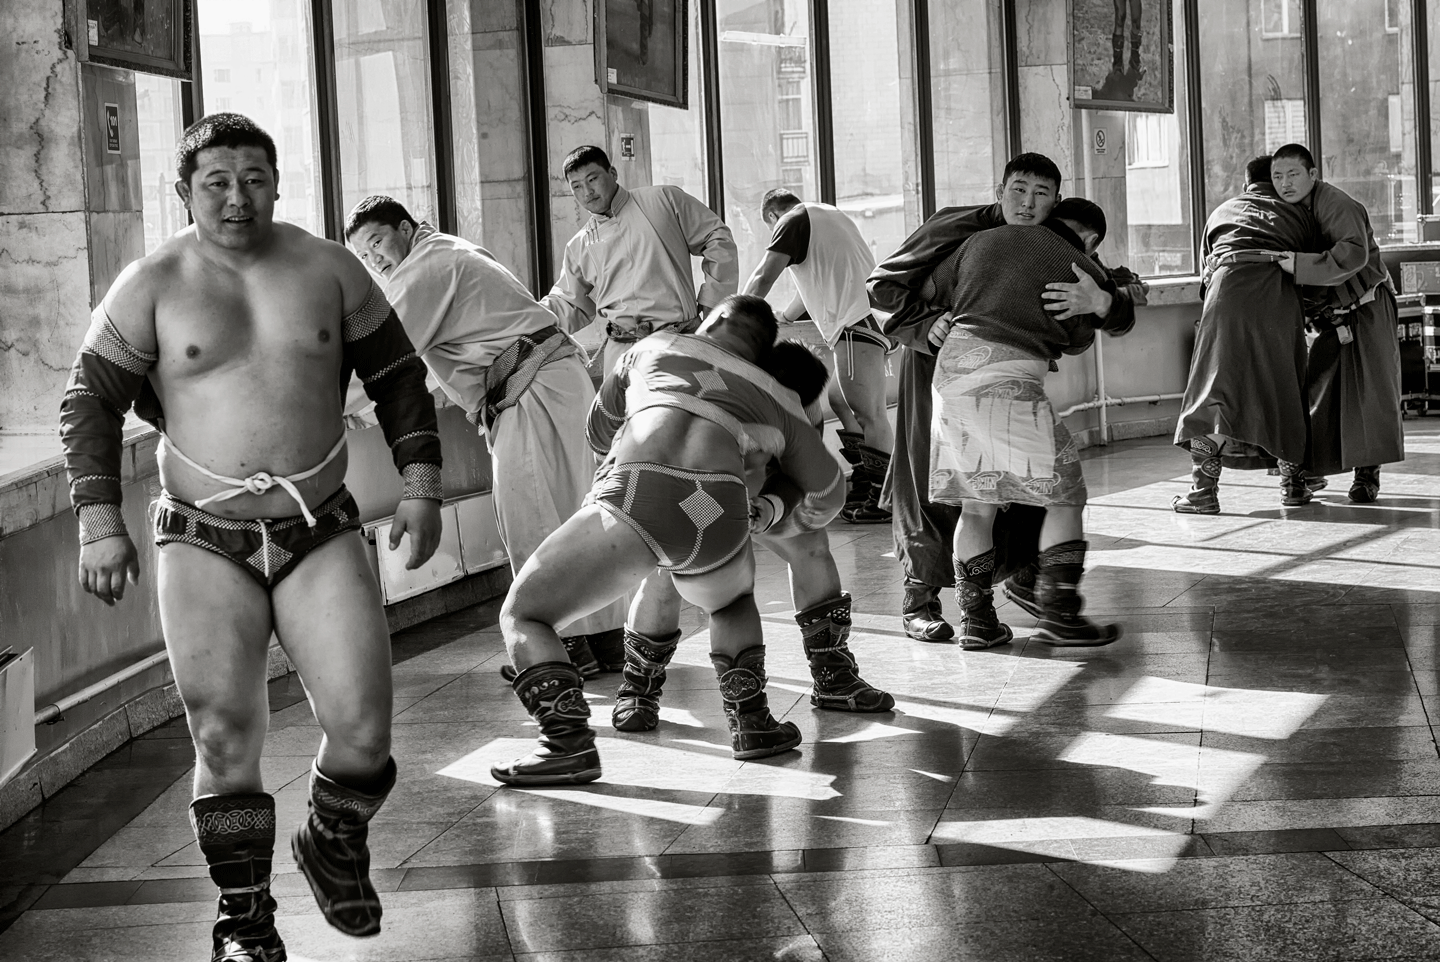 Mongolian Wrestling